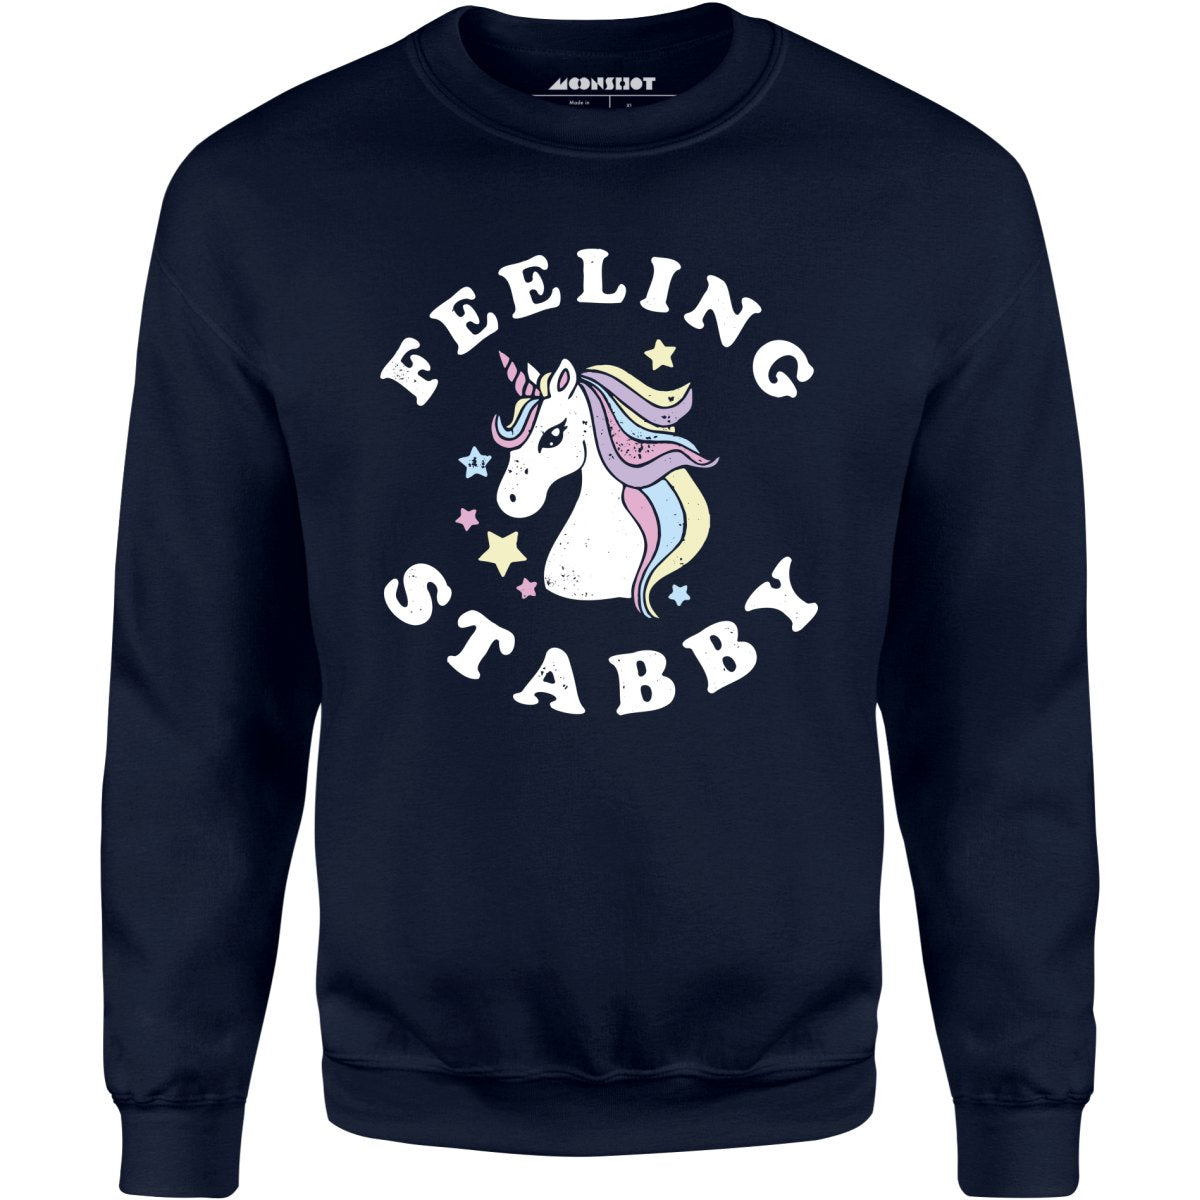 Feeling Stabby - Unisex Sweatshirt